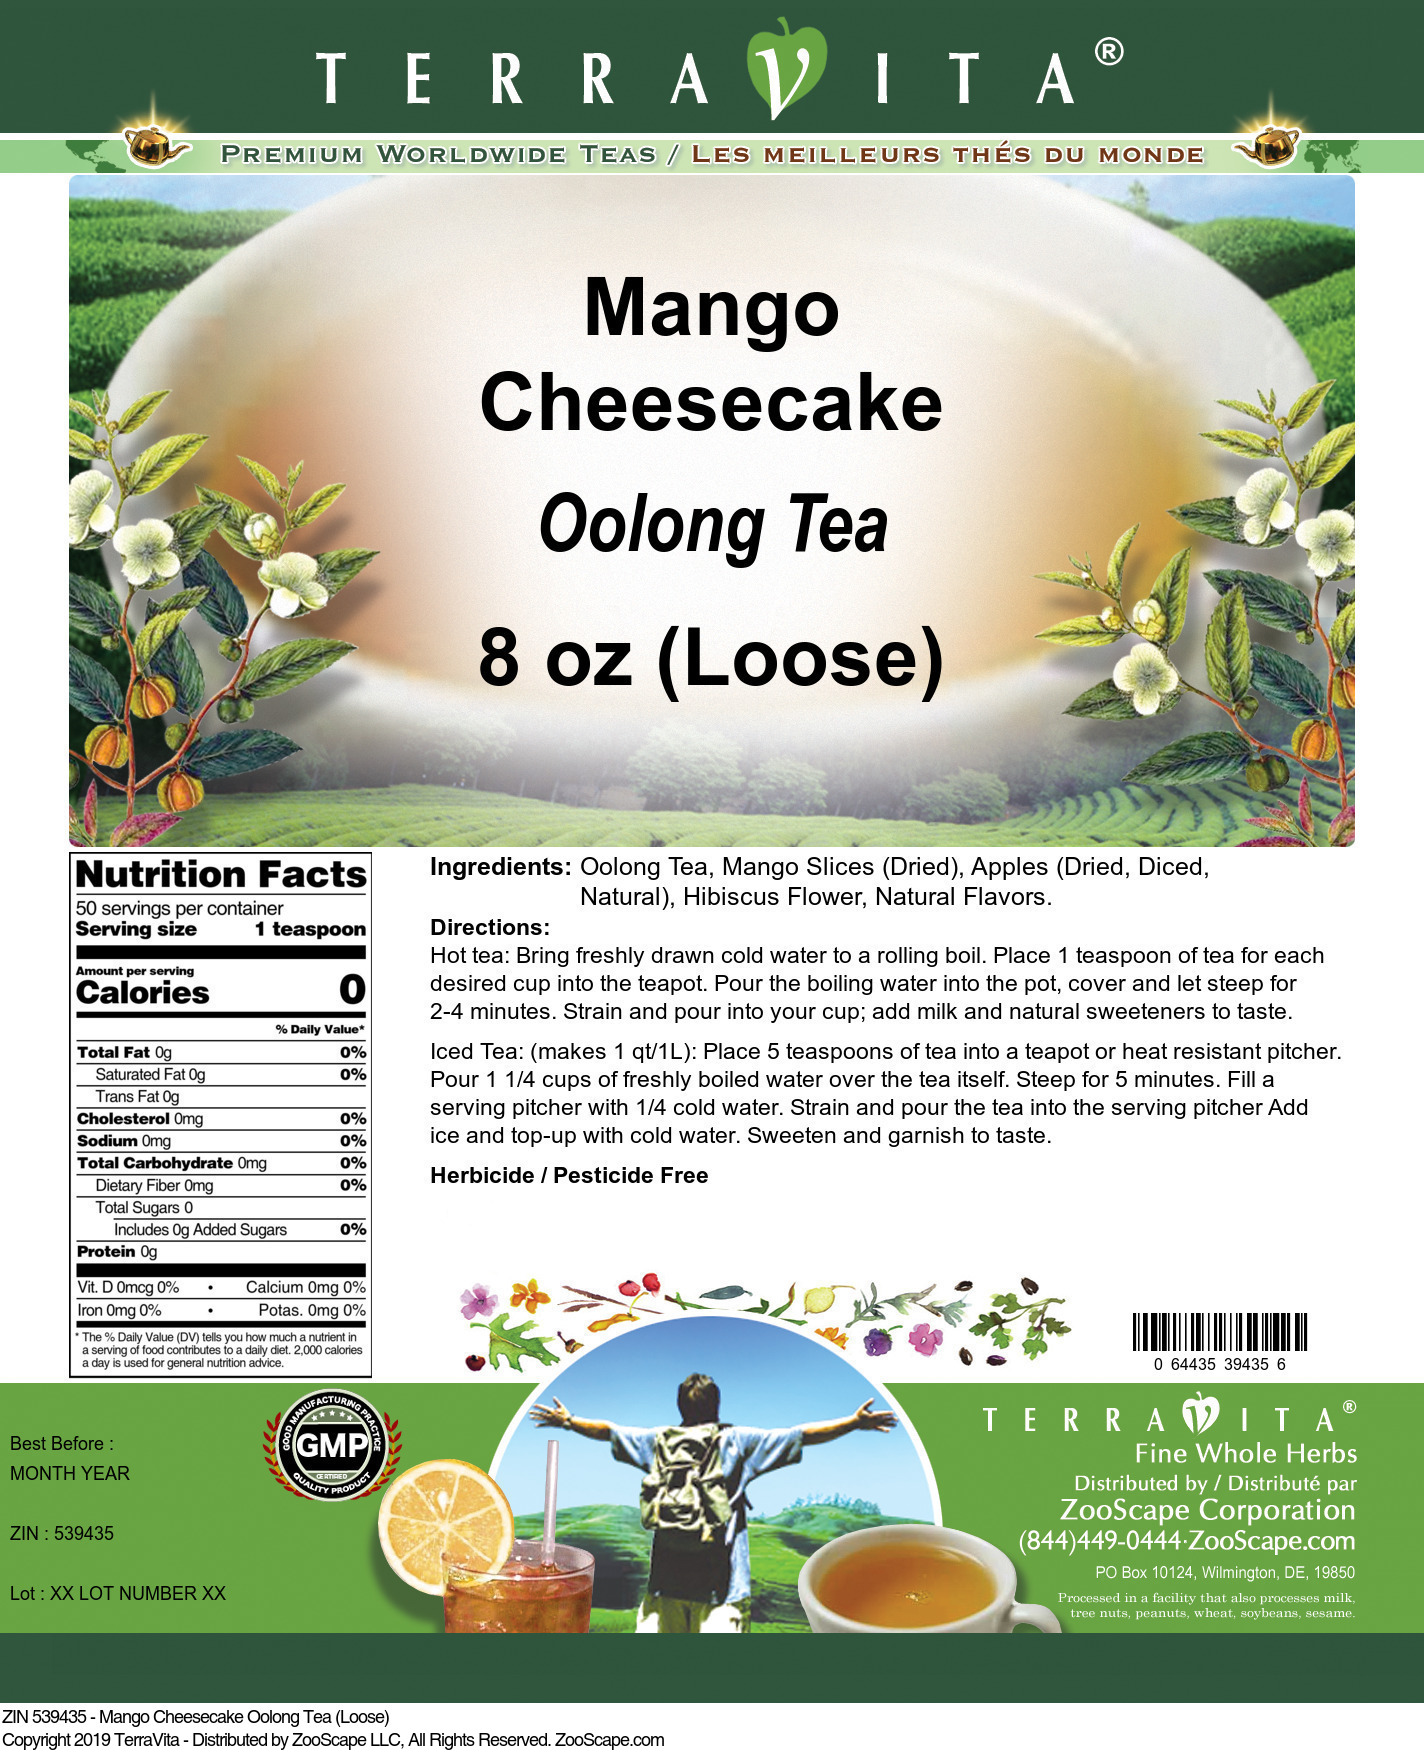 Mango Cheesecake Oolong Tea (Loose) - Label